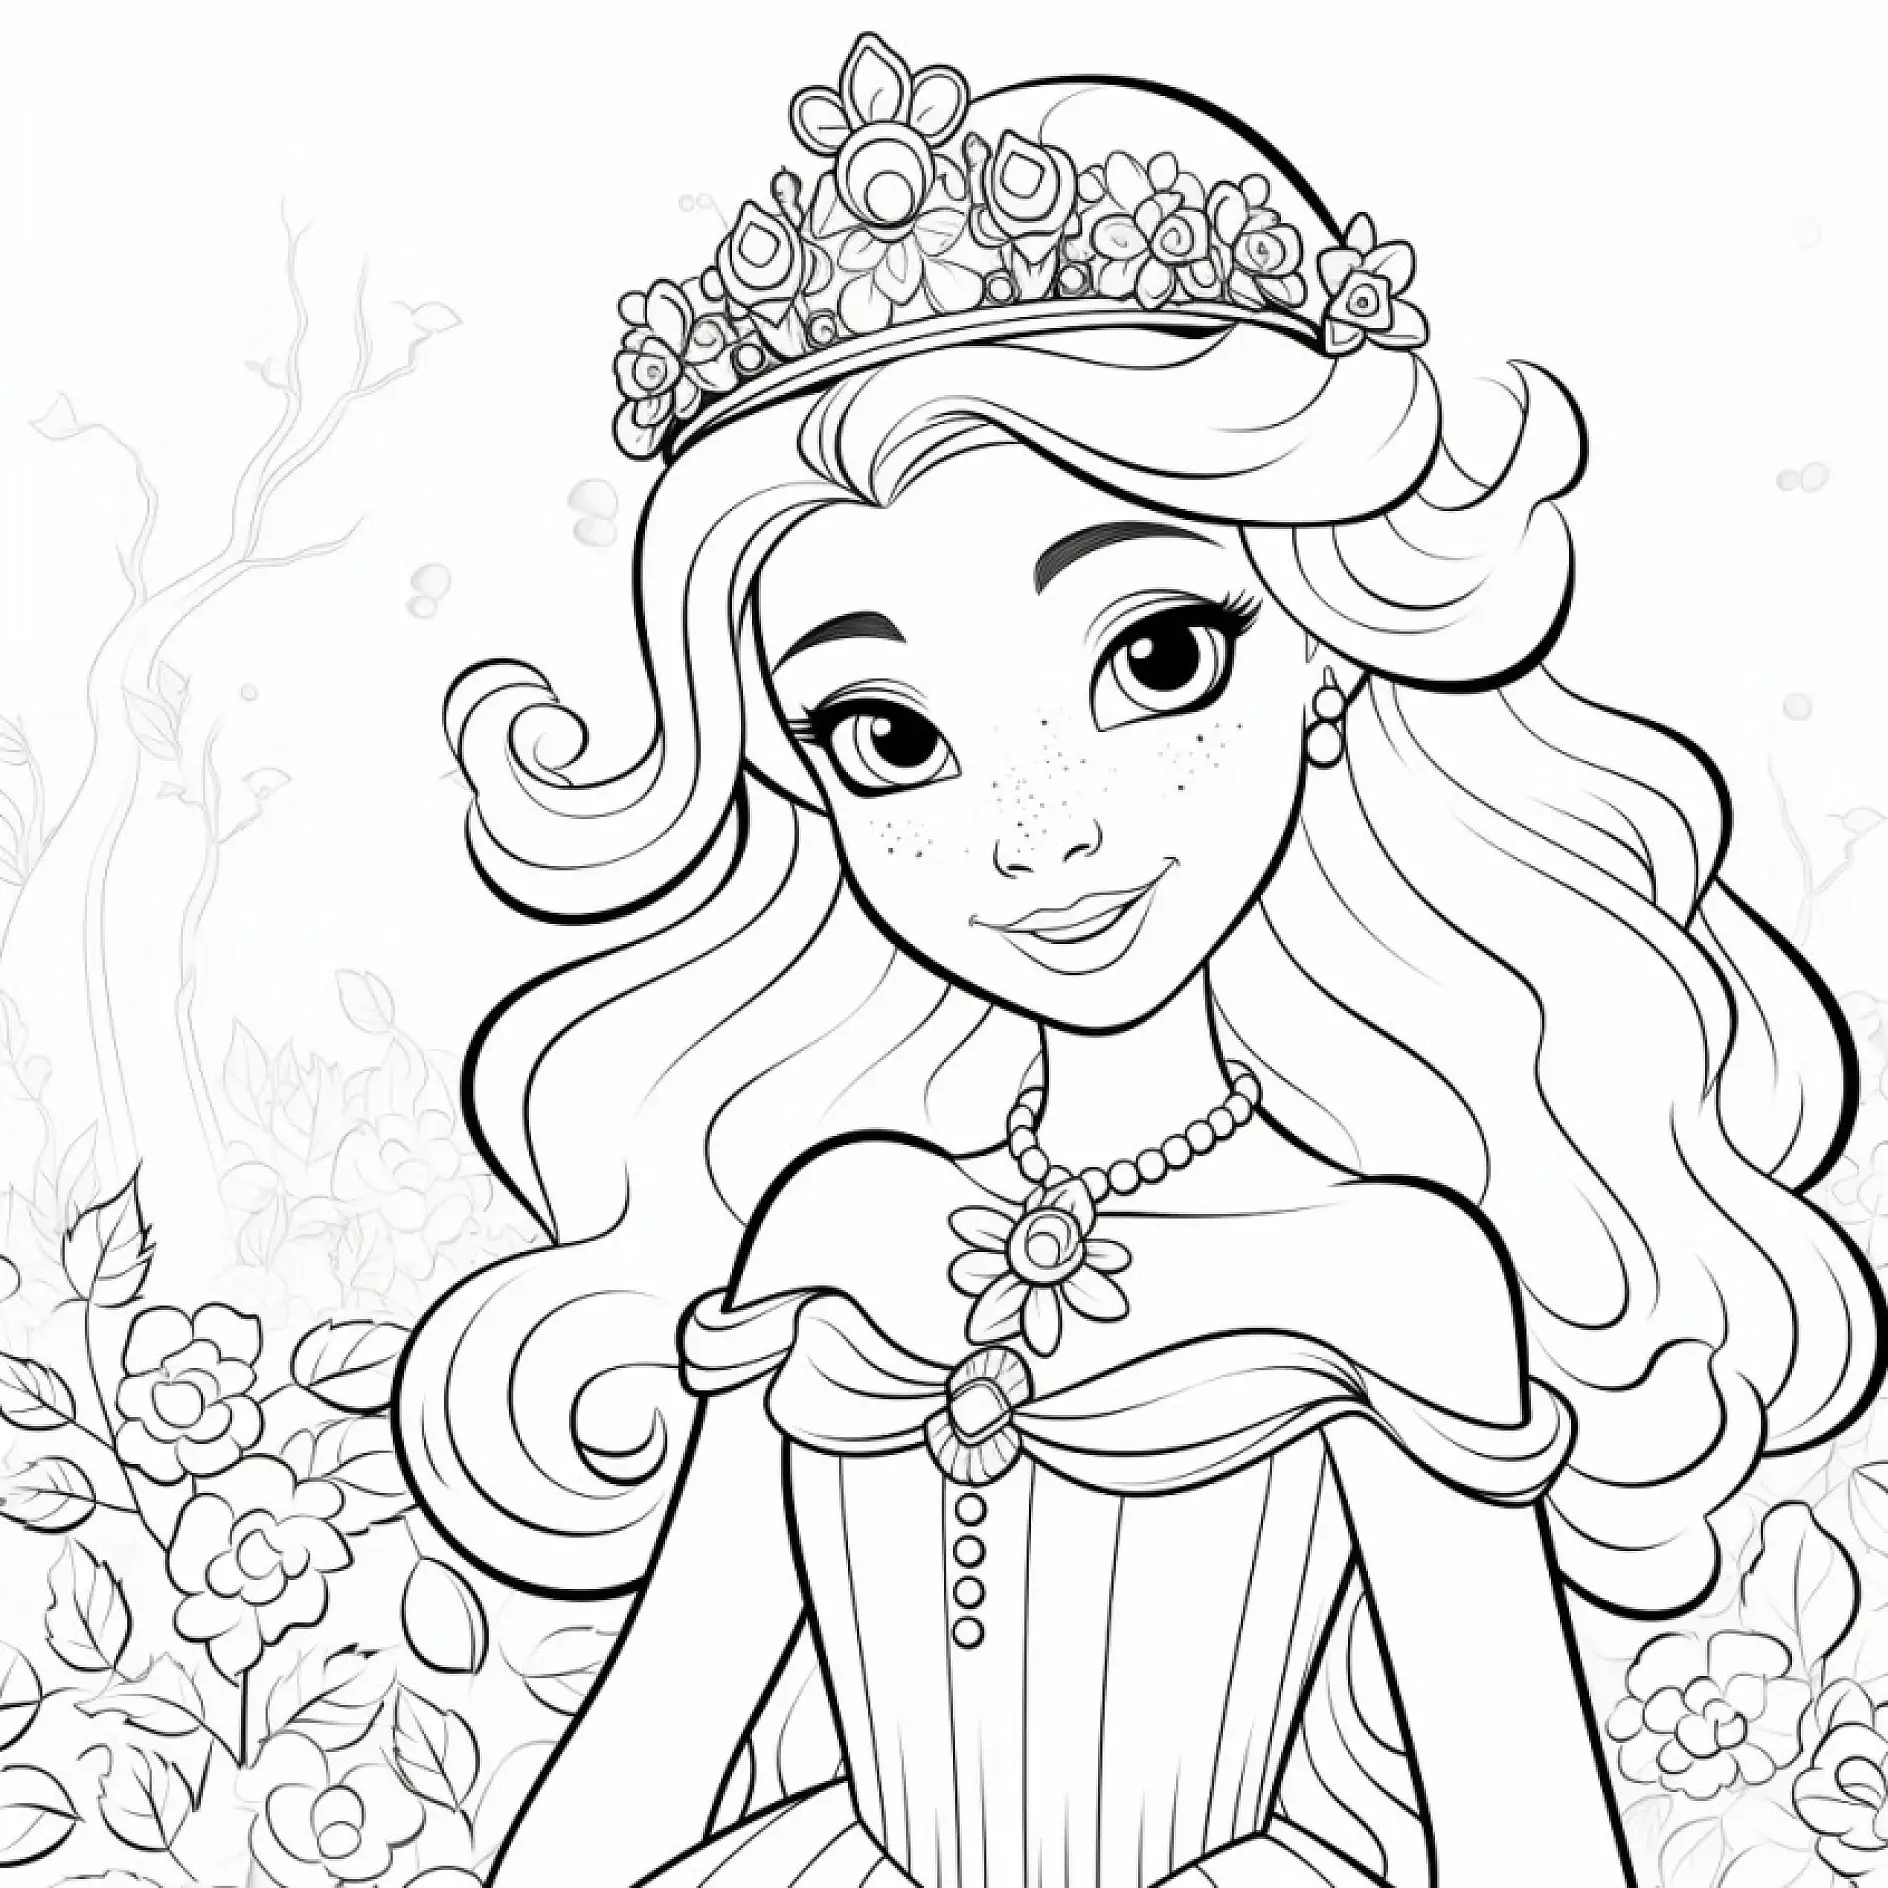 Ausmalbild Prinzessin mit Blumenkranz im Haar und Perlenkette